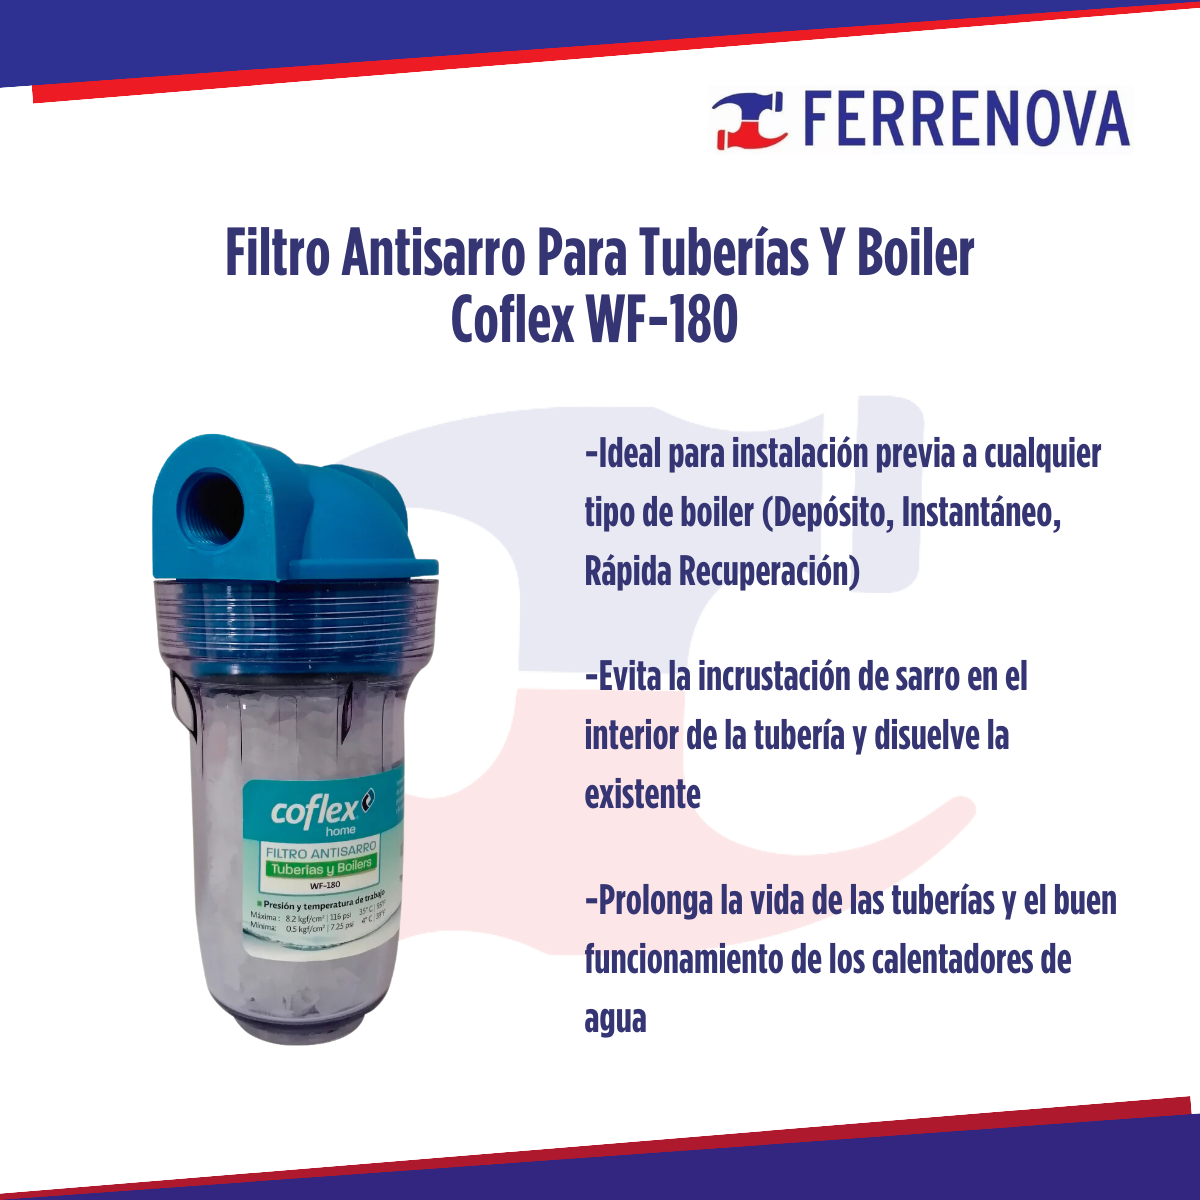 Filtro Antisarro Para Tuberías Y Boiler Coflex WF-180